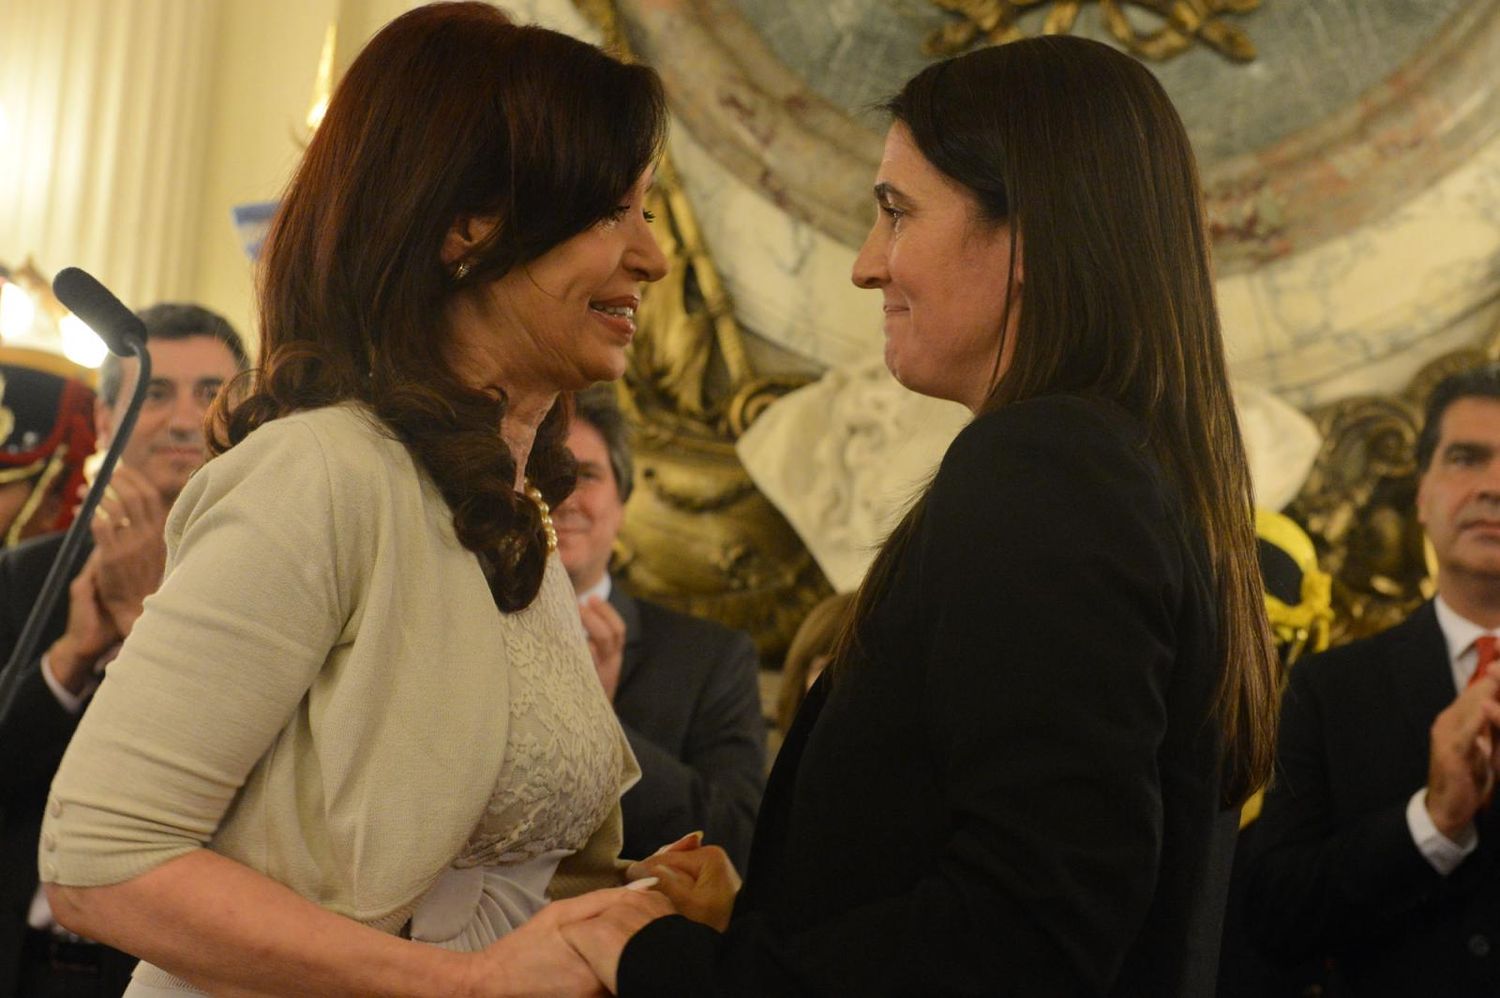 La exministra de Cristina, Cecilia Rodríguez, es nueva secretaria de Seguridad en Avellaneda